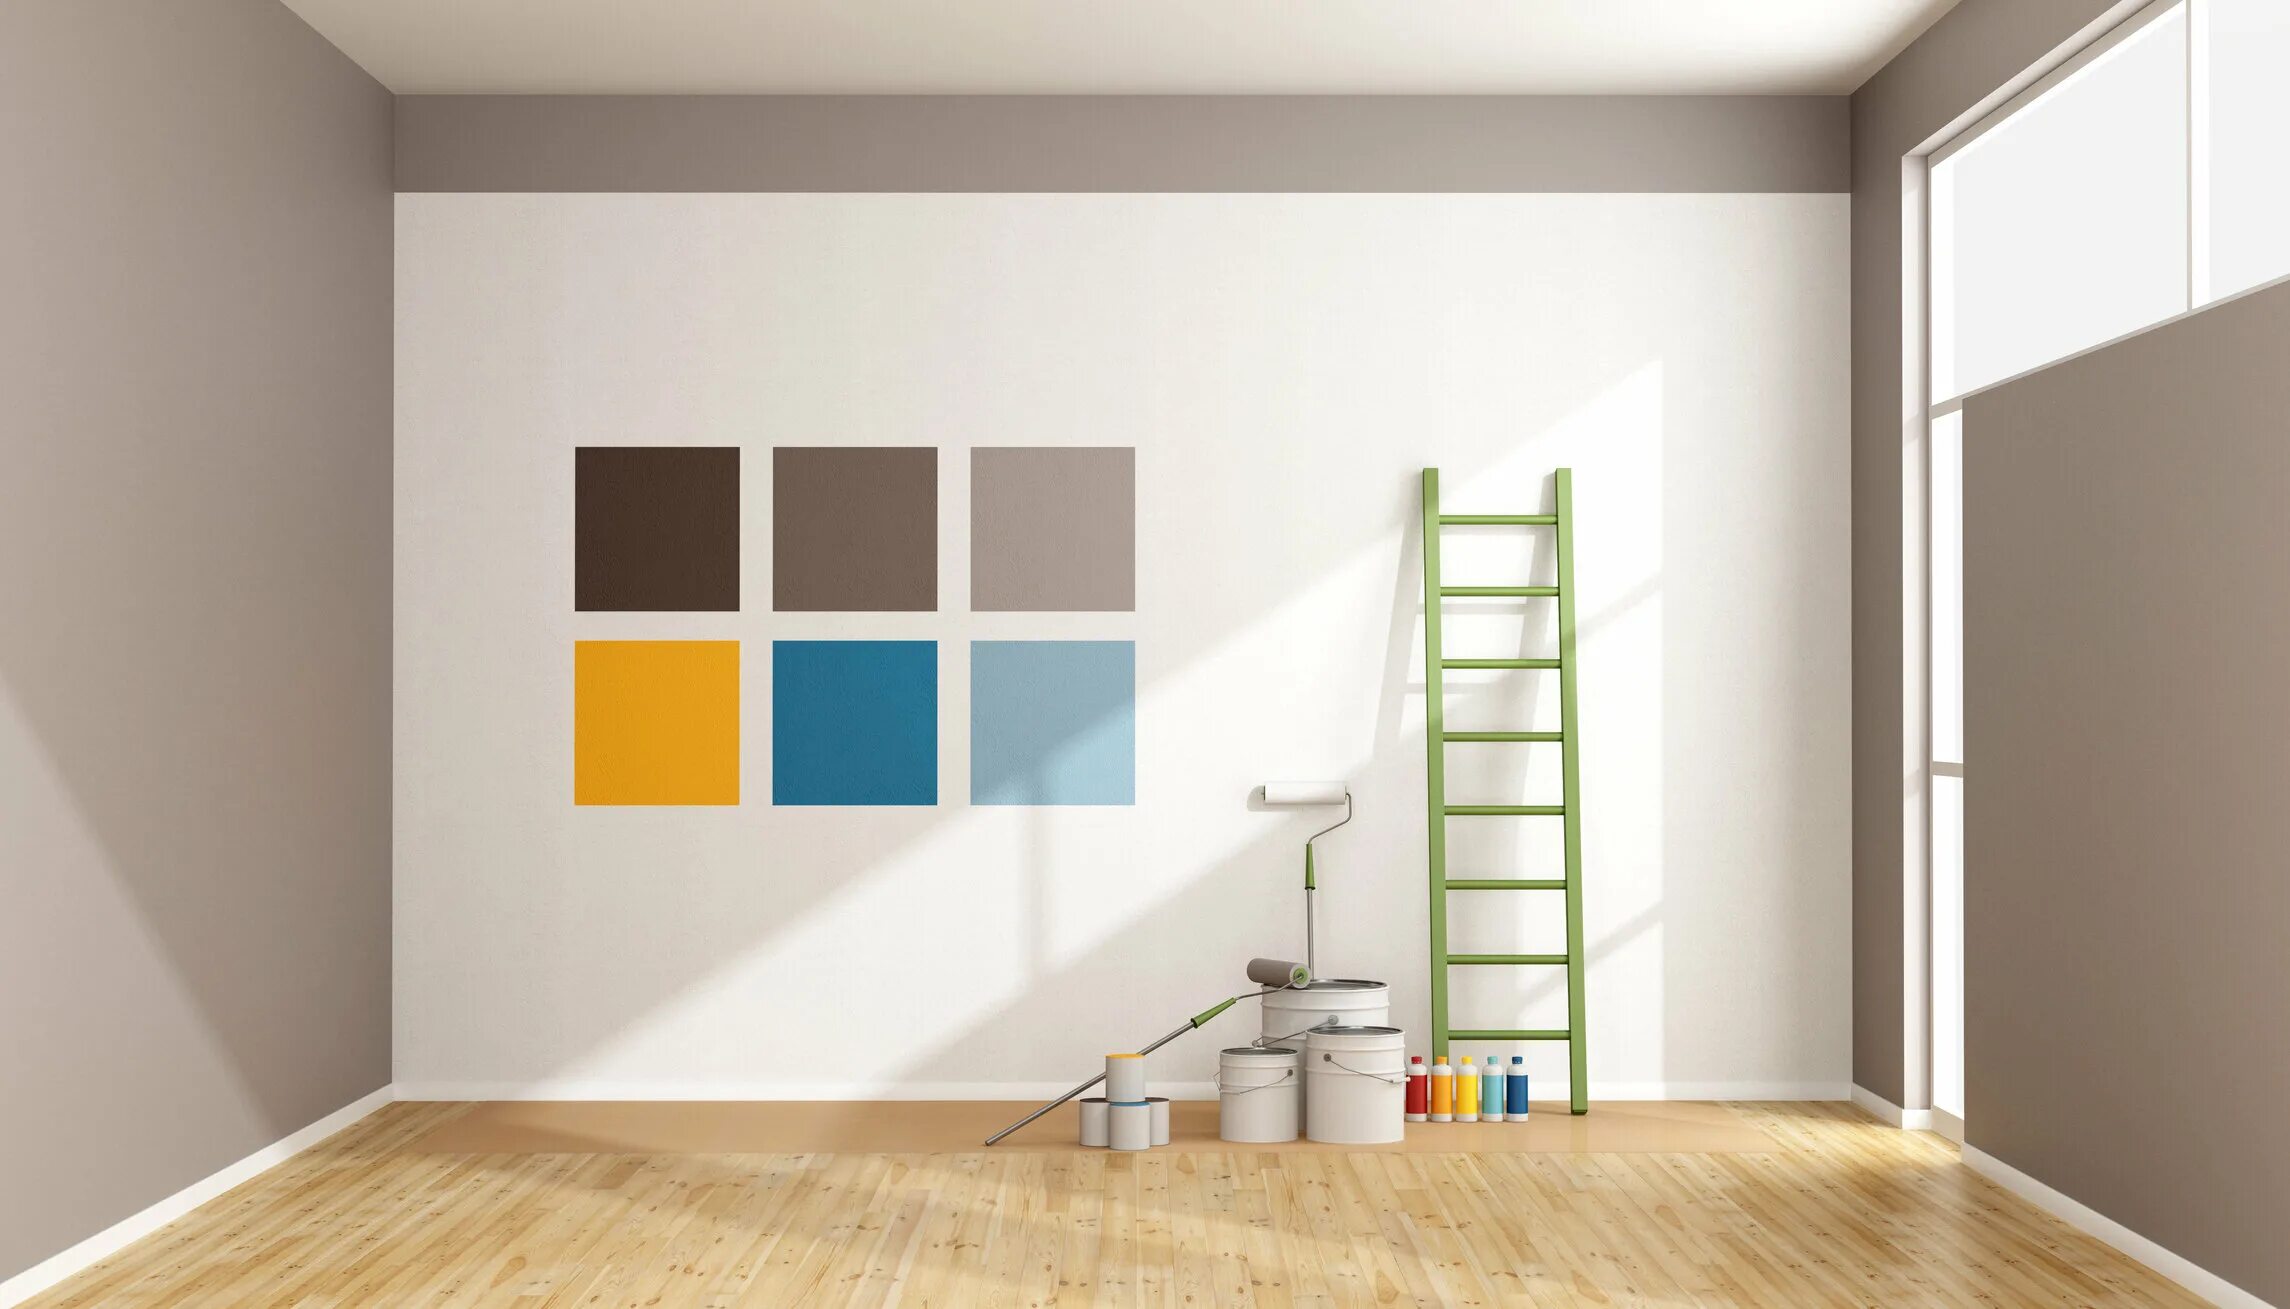 Краска в интерьере. Краска интерьерная. Покраска стен. Покрашенные стены в квартире. Обои без рекламы